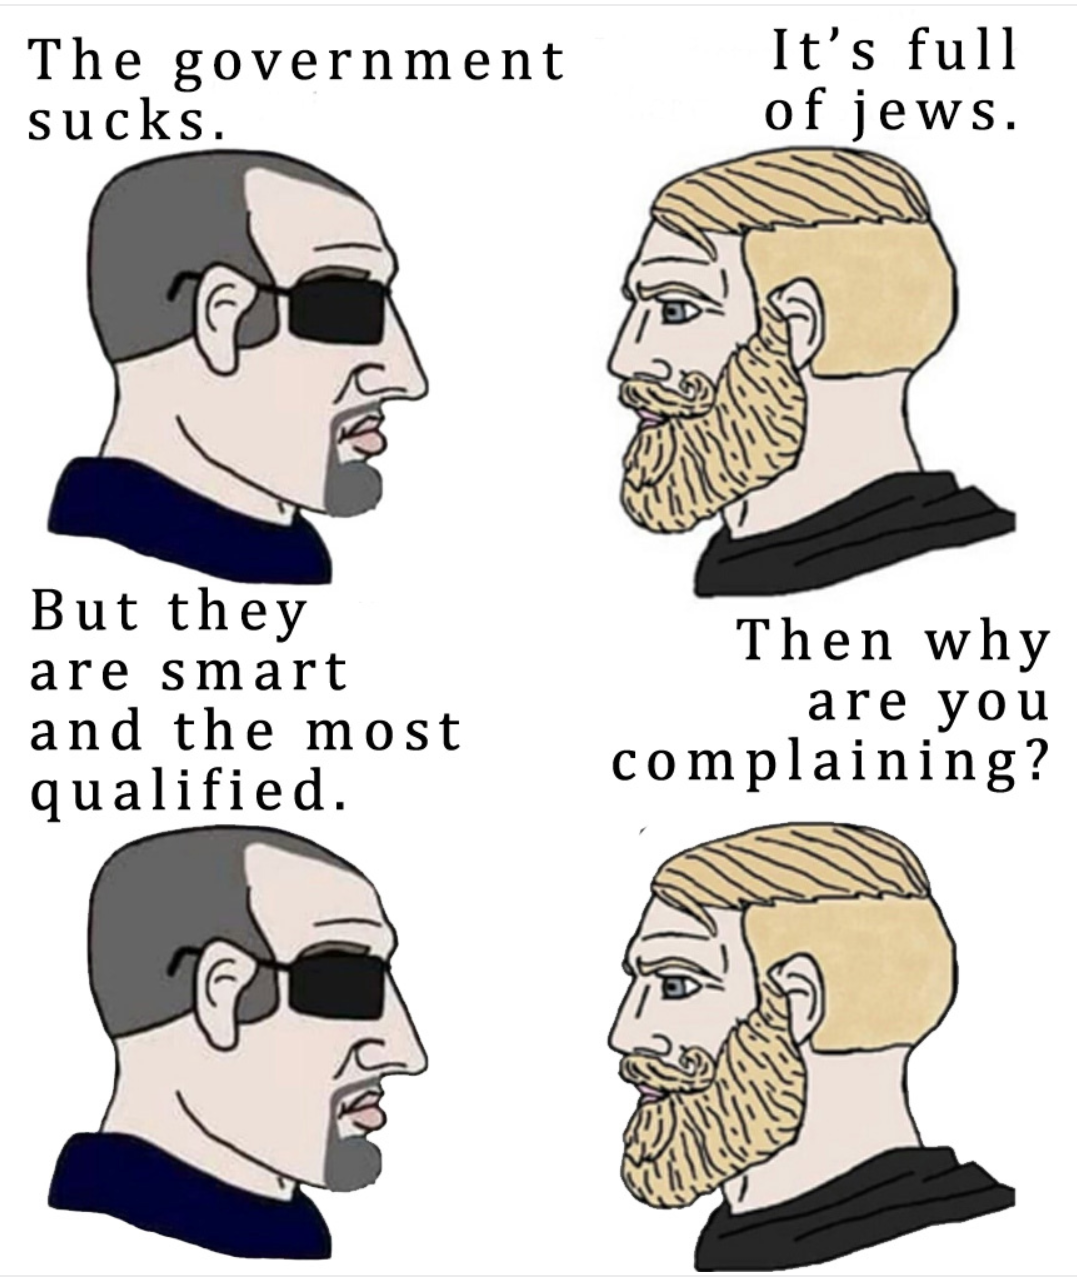 Jews are smart